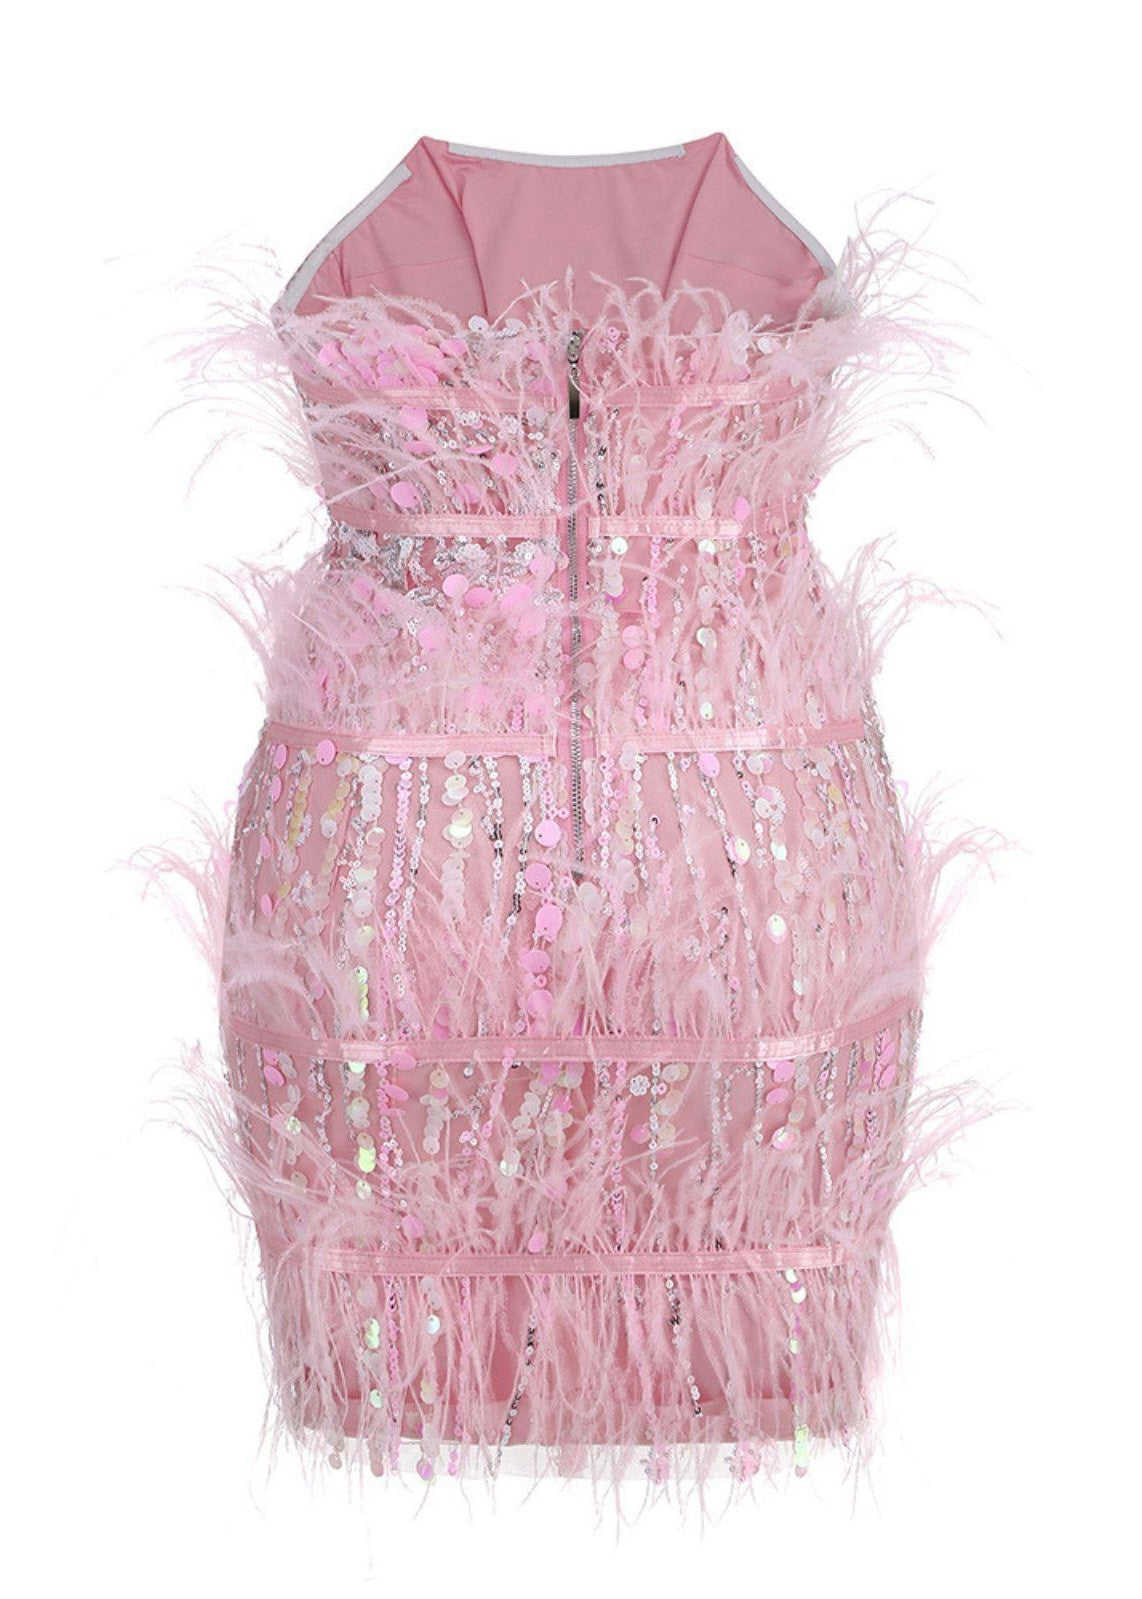 Rosé Mini Dress – Marshea Chanel Squared